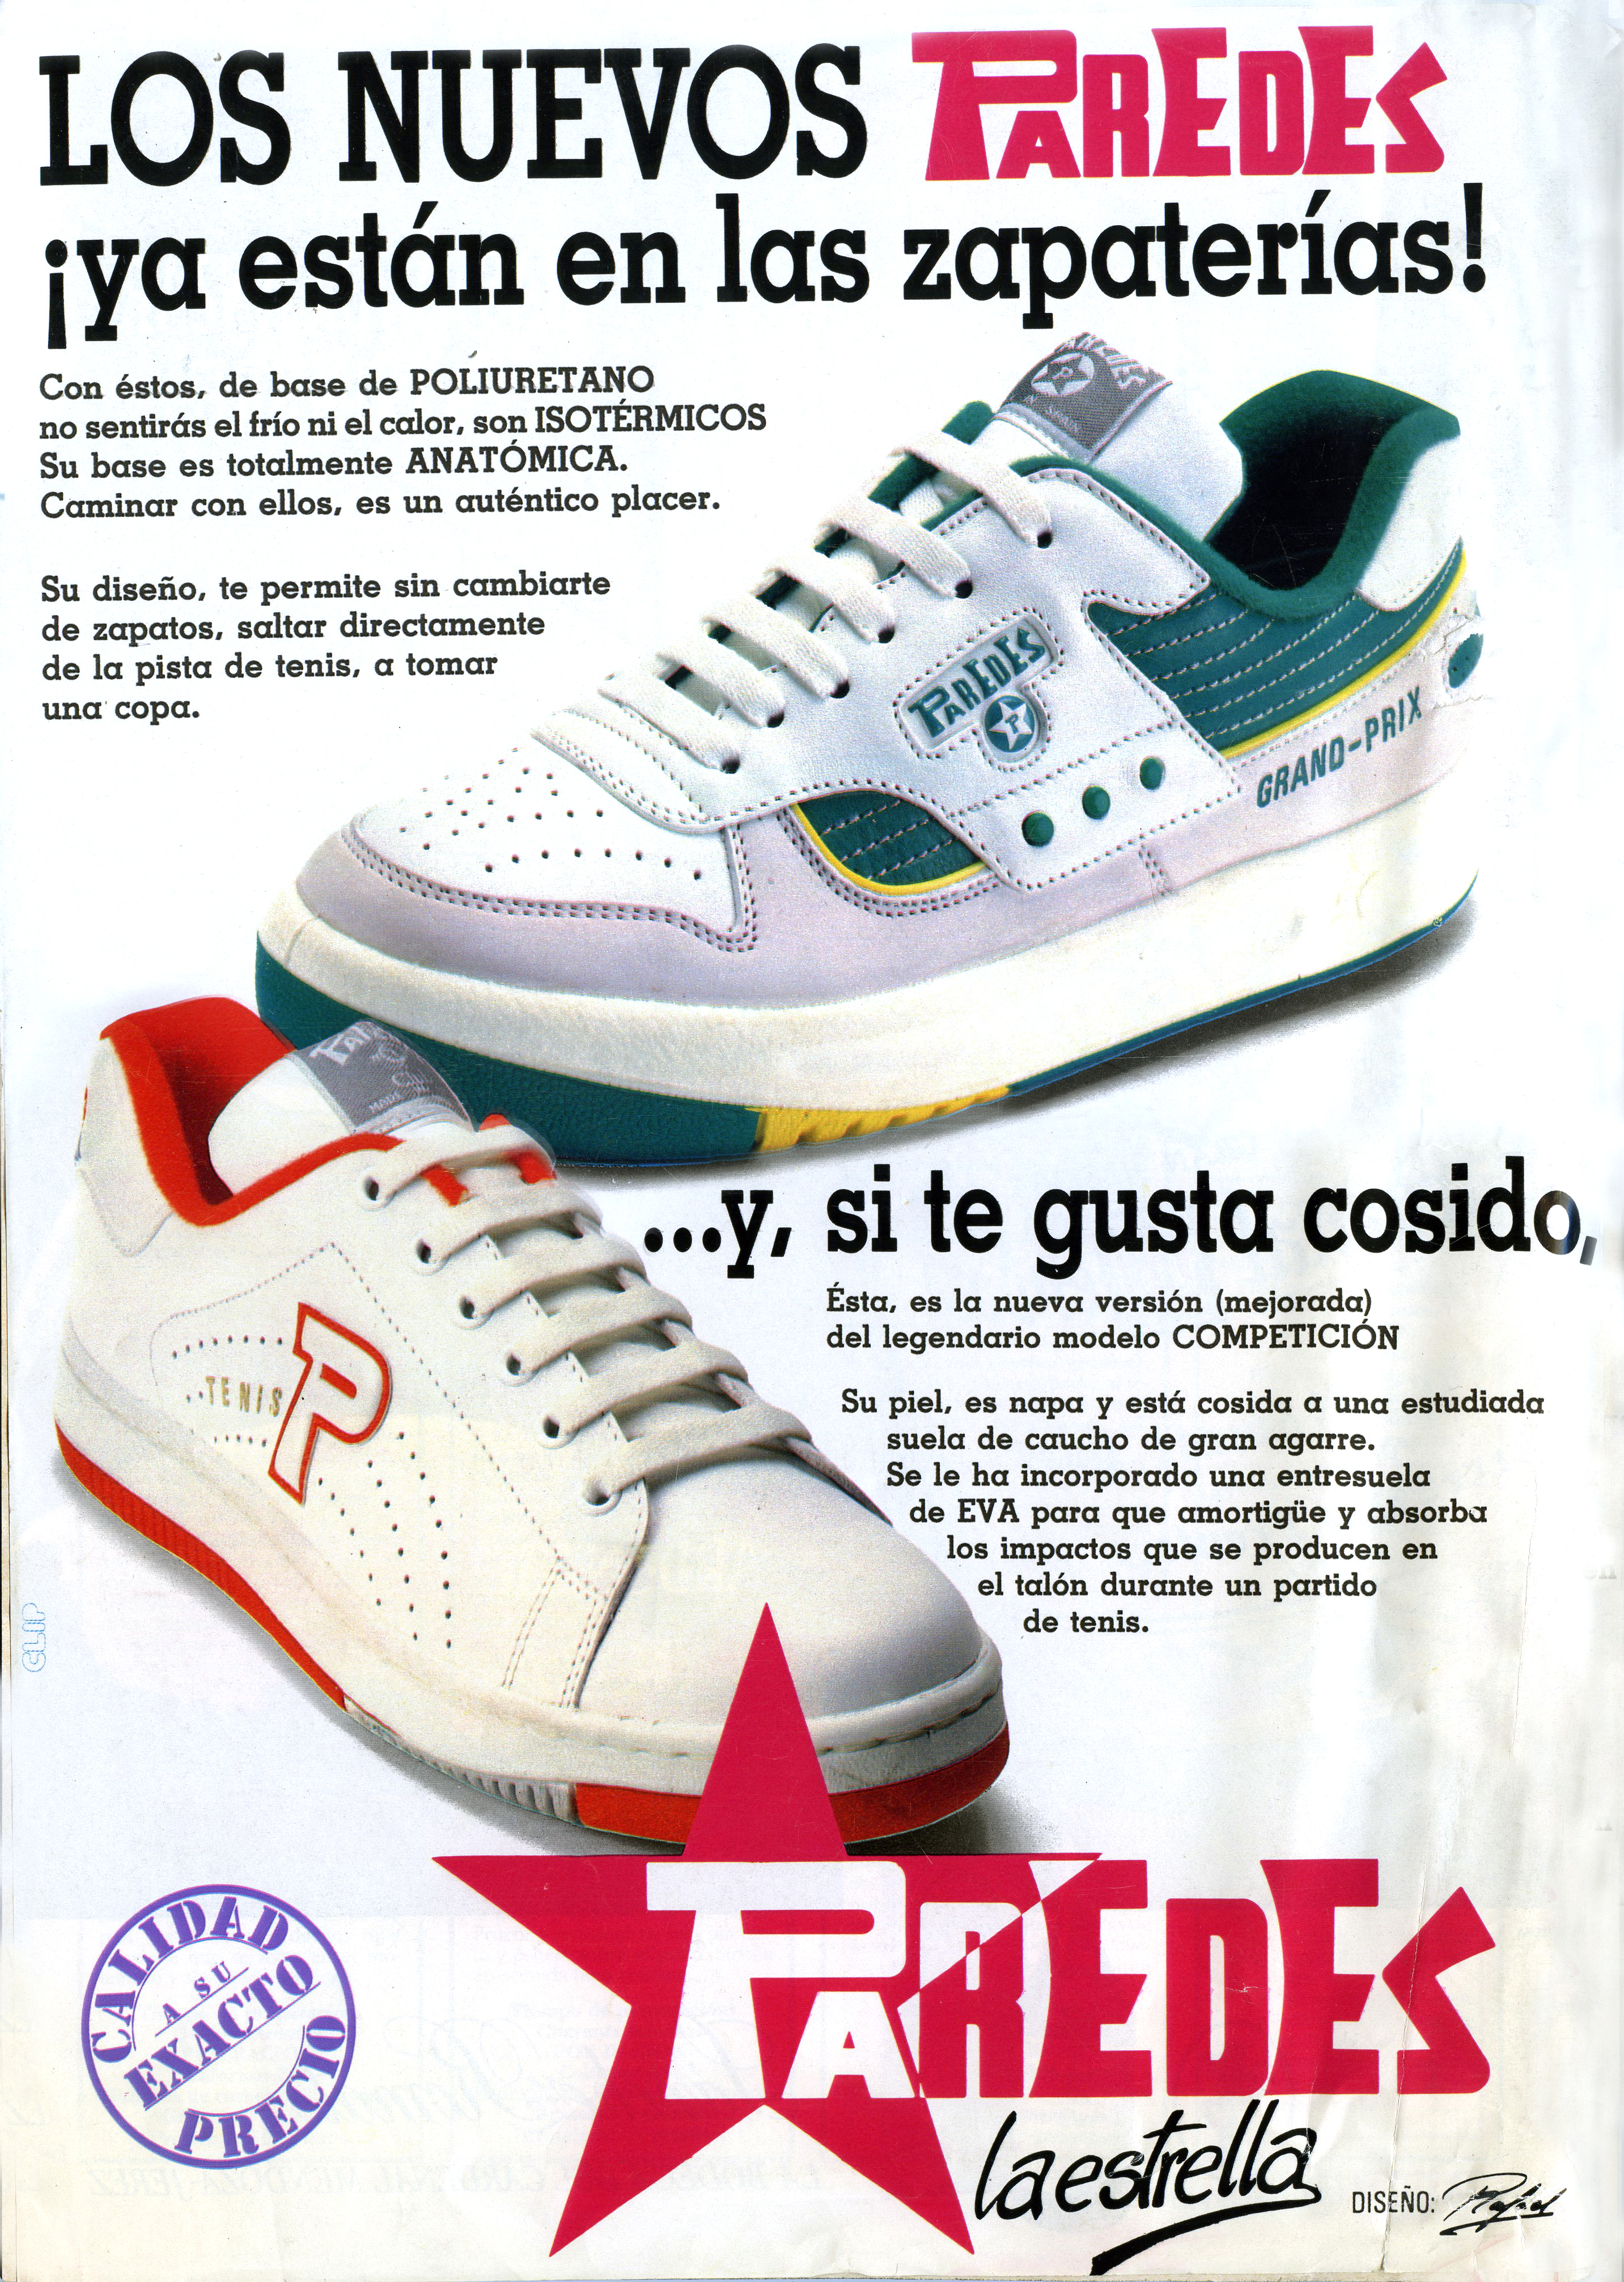 Yumas, la historia de éxito de unas zapatillas españolas